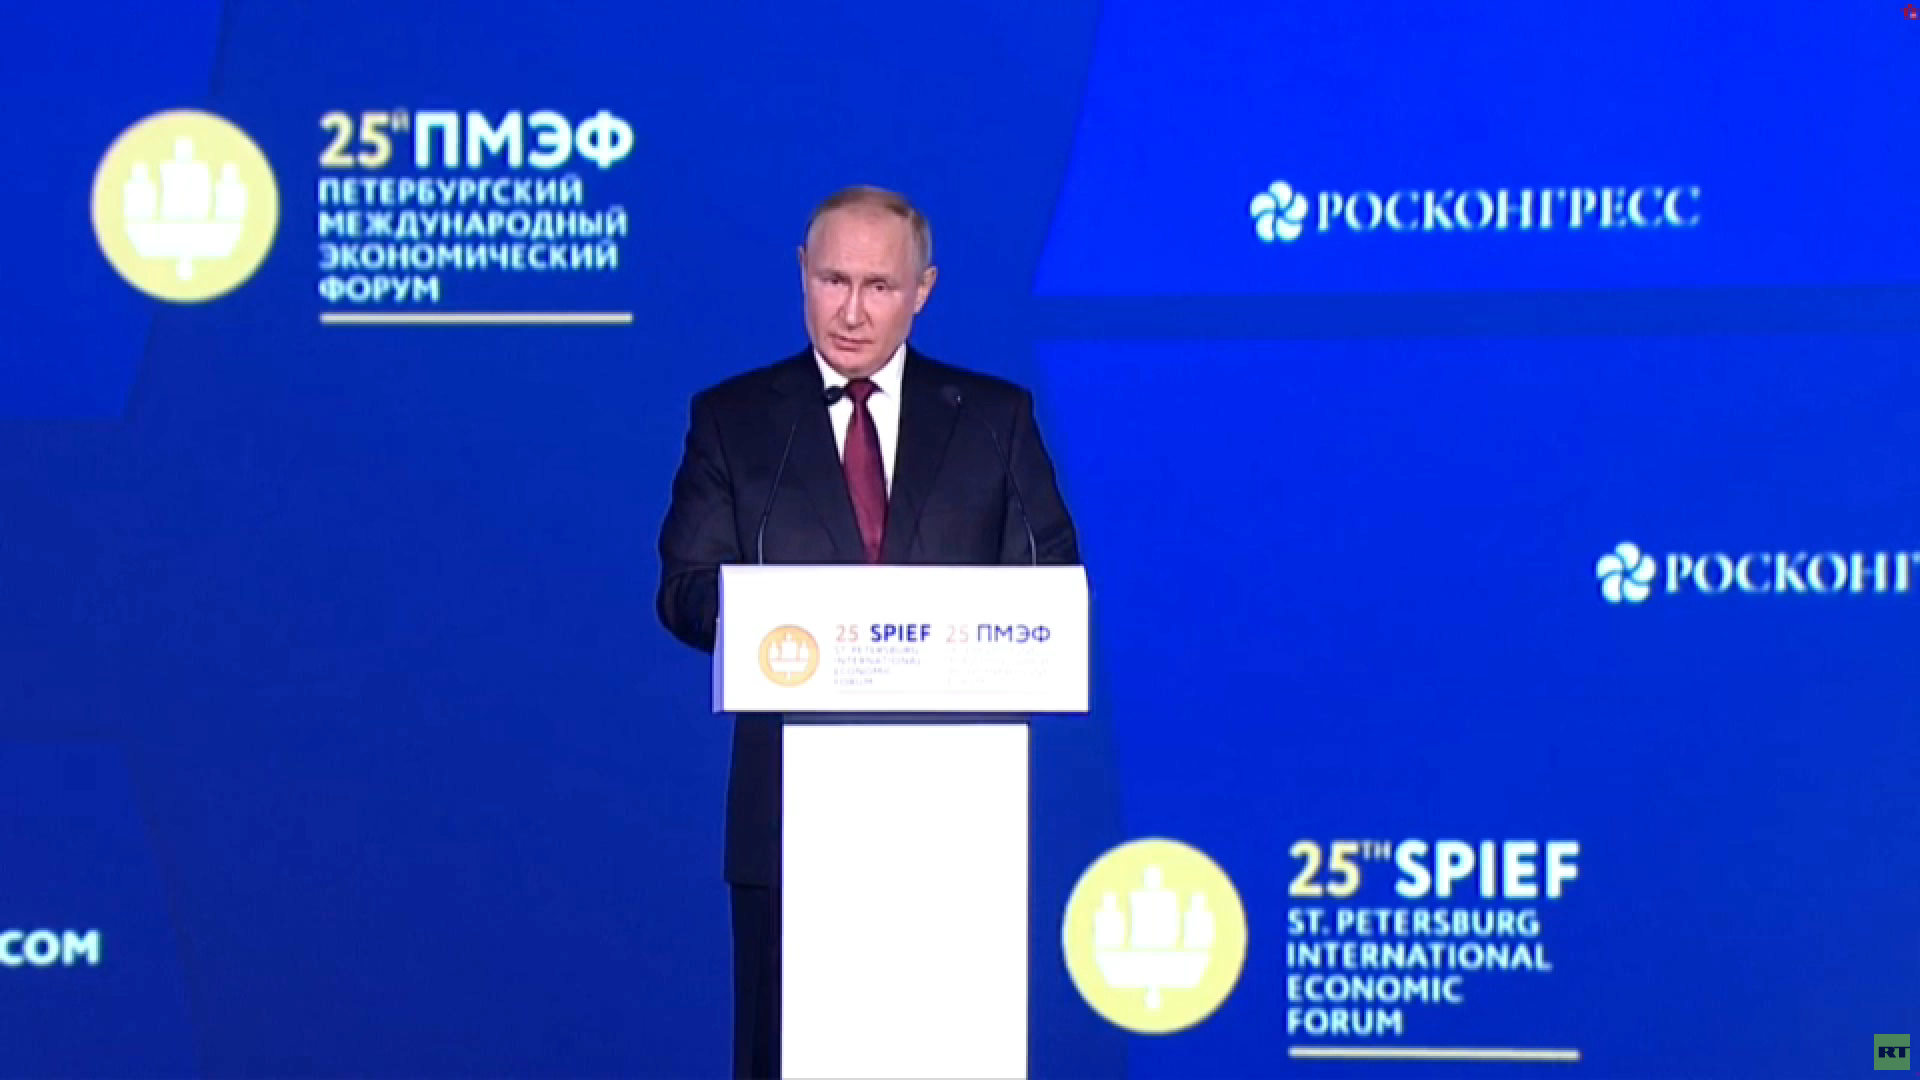 كلمة الرئيس فلاديمير بوتين في منتدى بطرسبورغ الاقتصادي الدولي